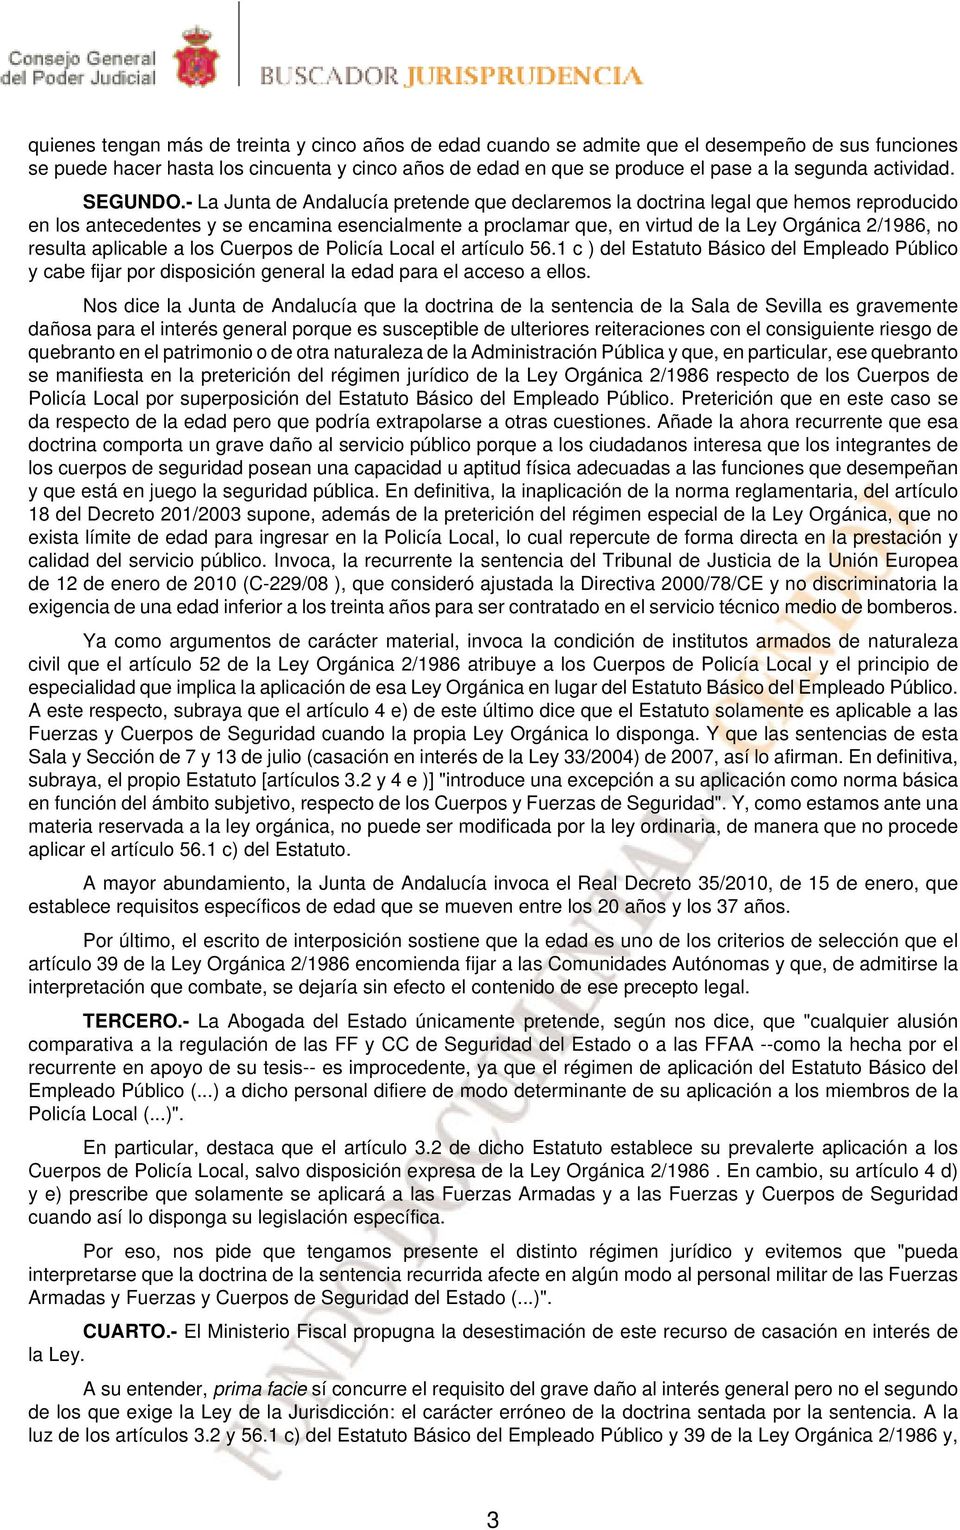 - La Junta de Andalucía pretende que declaremos la doctrina legal que hemos reproducido en los antecedentes y se encamina esencialmente a proclamar que, en virtud de la Ley Orgánica 2/1986, no